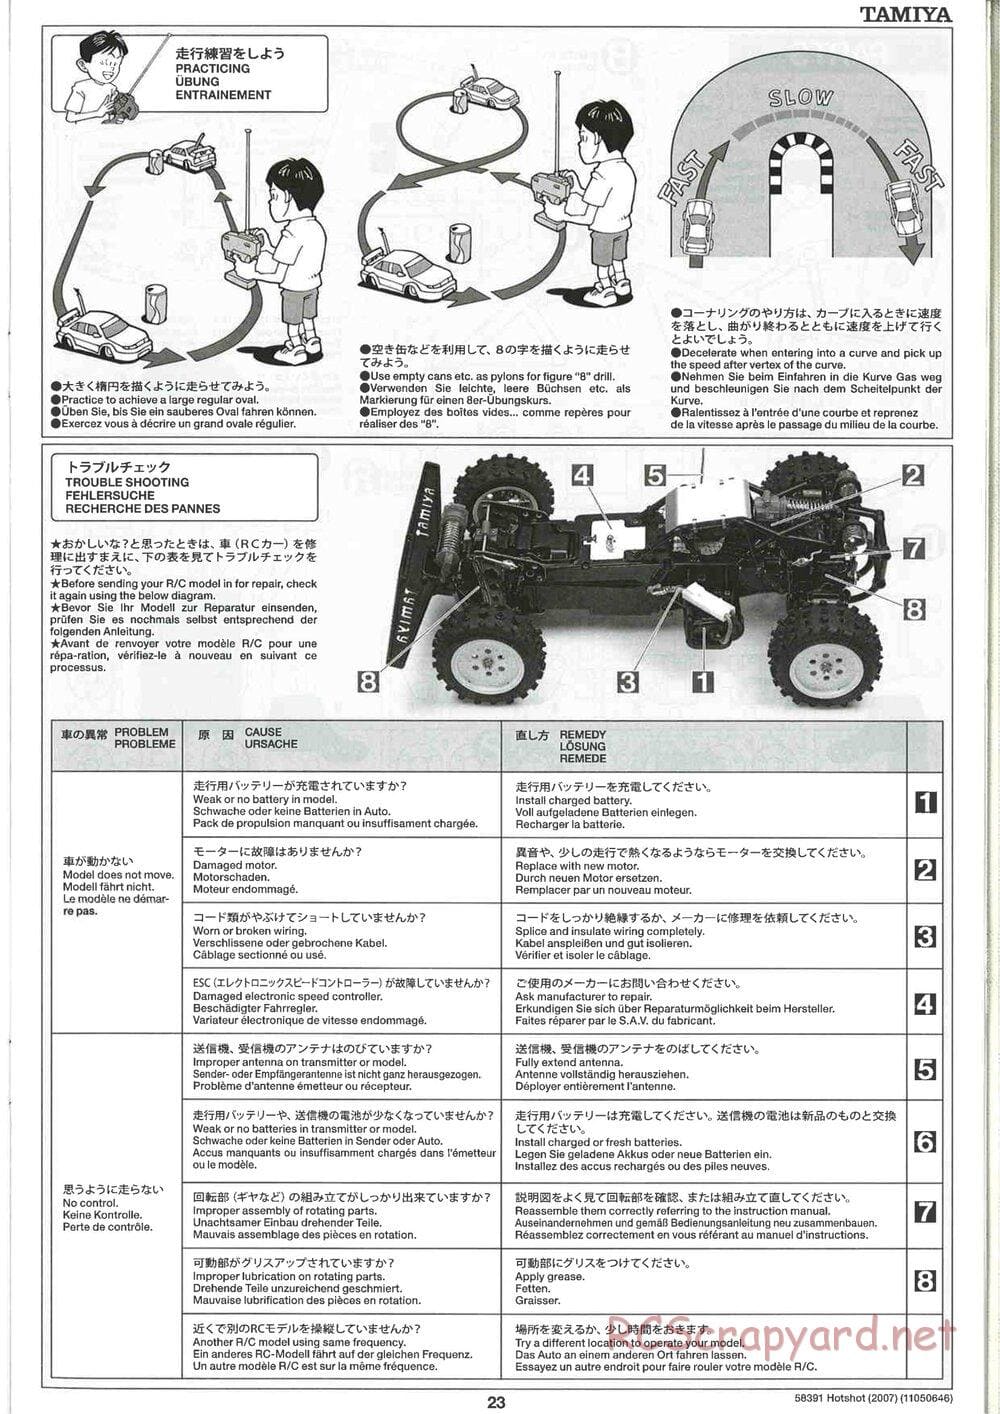 Tamiya - Hotshot - 2007 - HS Chassis - Manual - Page 23